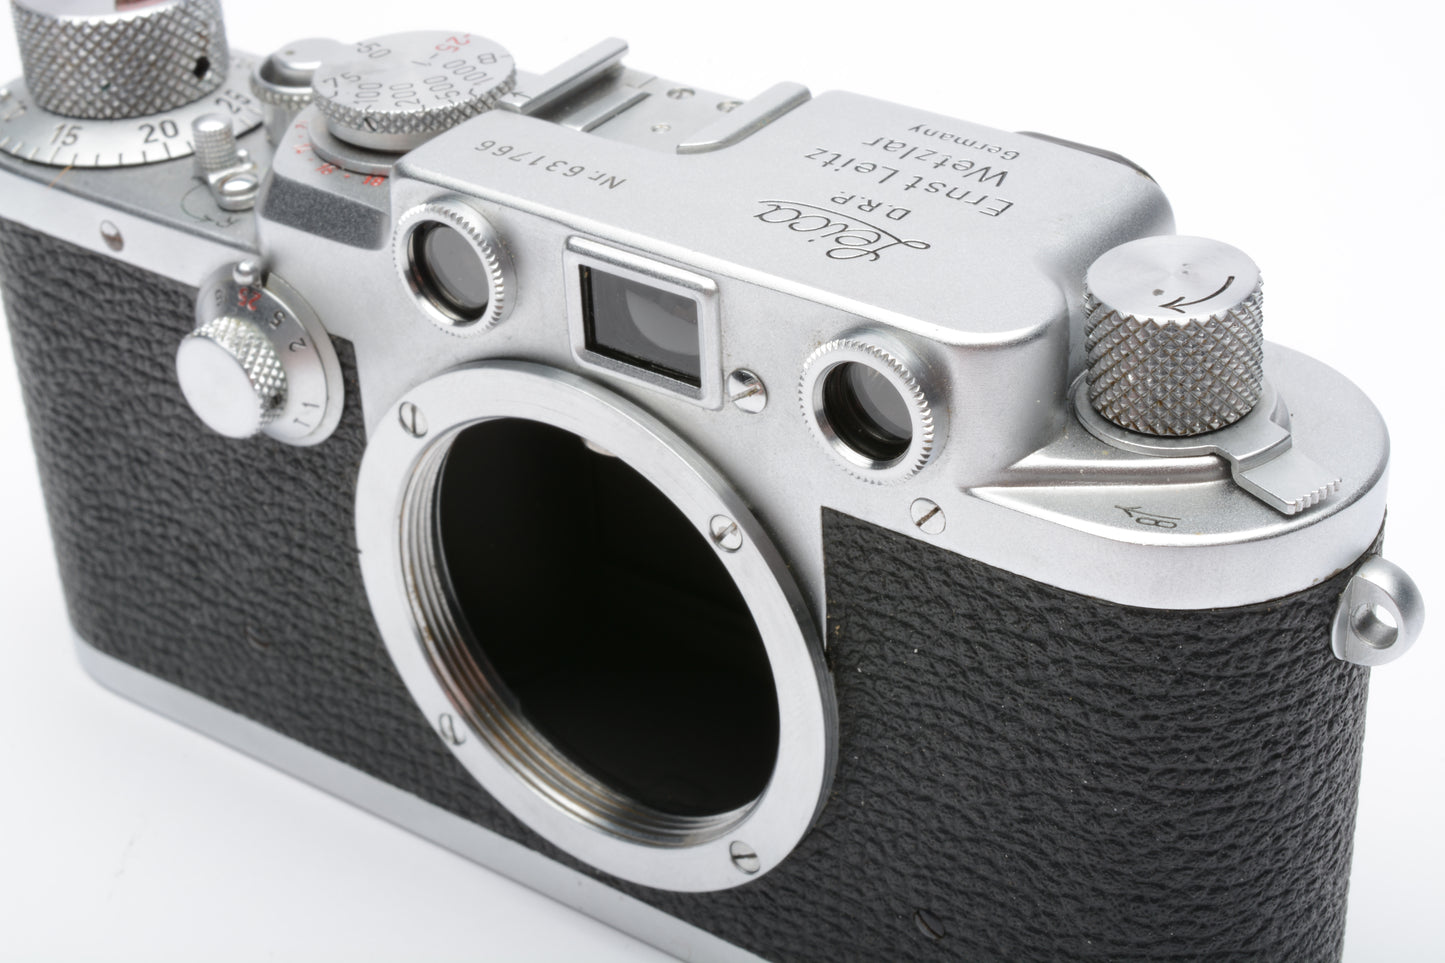 Leica IIIf 35mm rangefinder camera red dial, works great!  Very clean